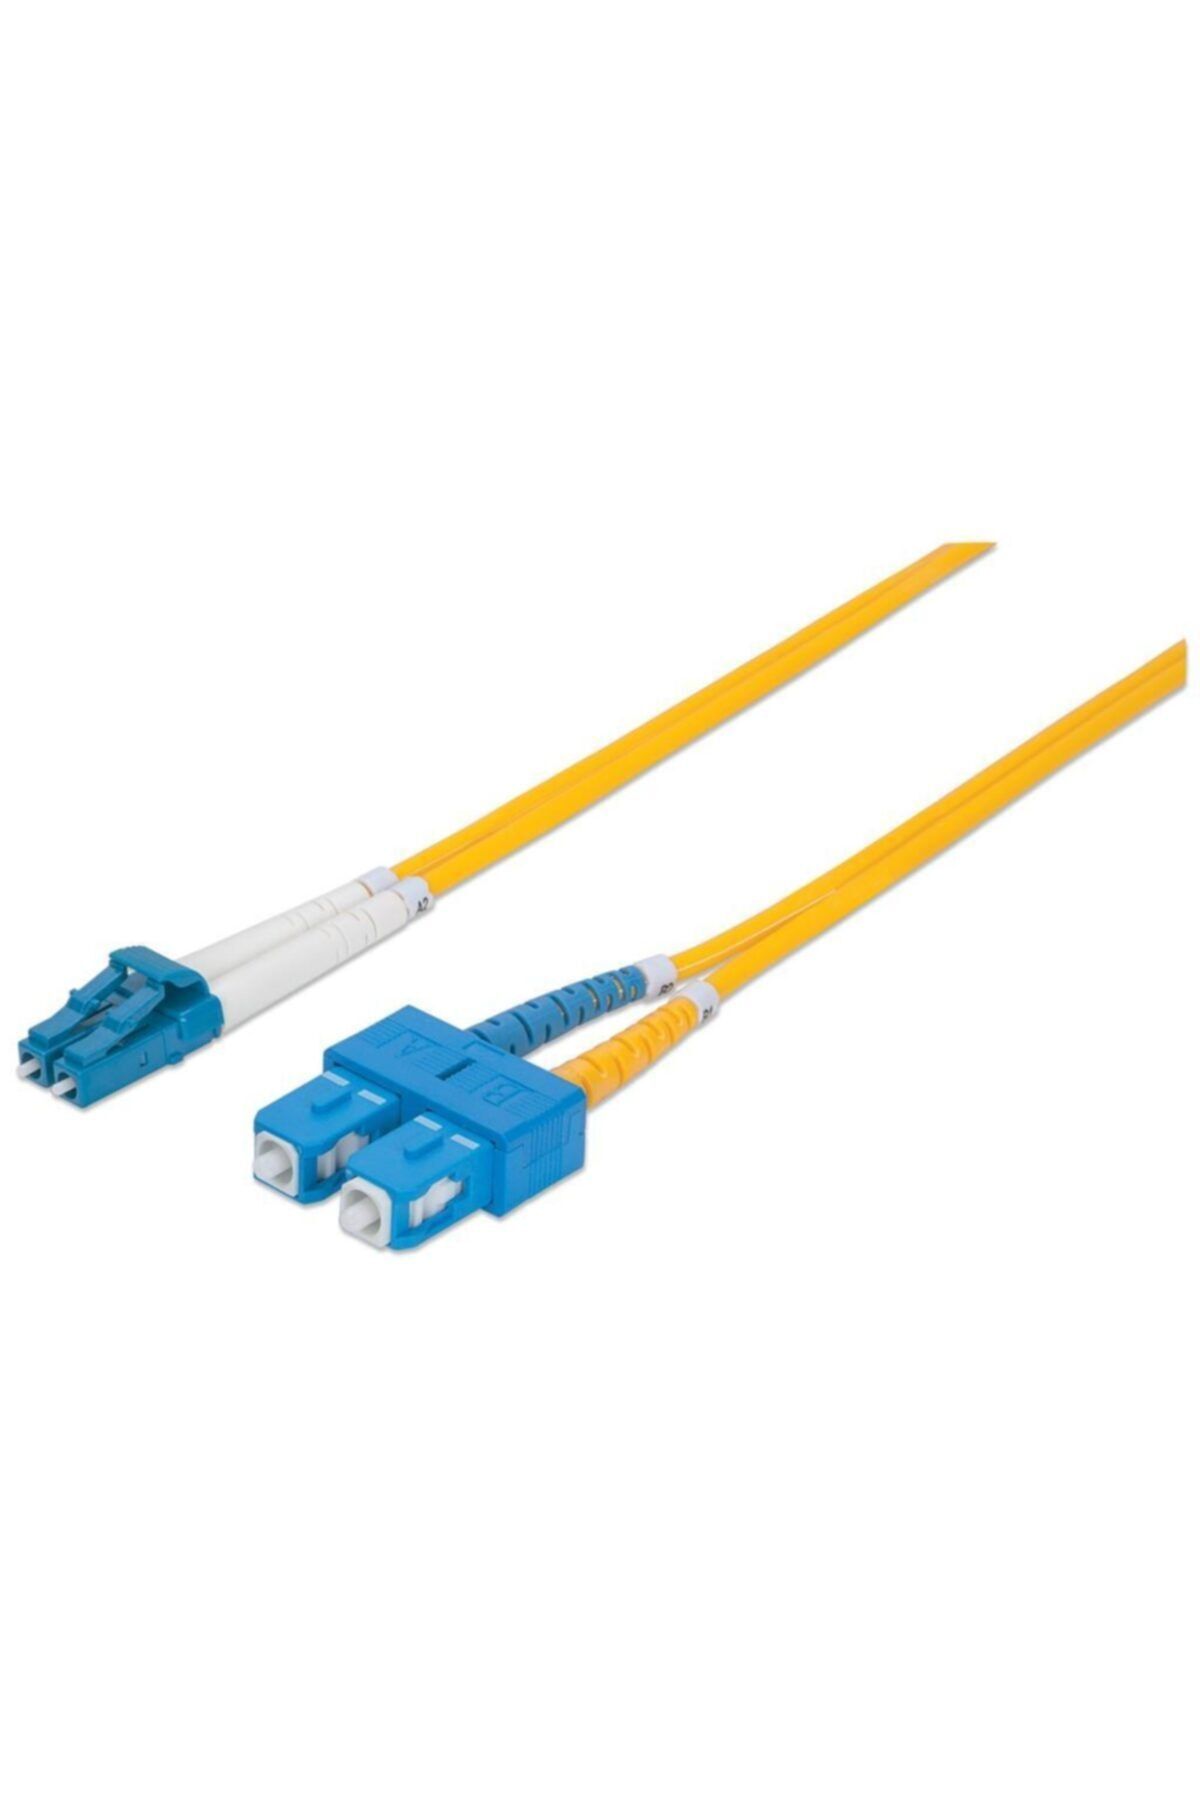 Longline Lc-sc Fiber Optik Patch Kablo 20 metre Singlemode Lngg652a1-20mtsc